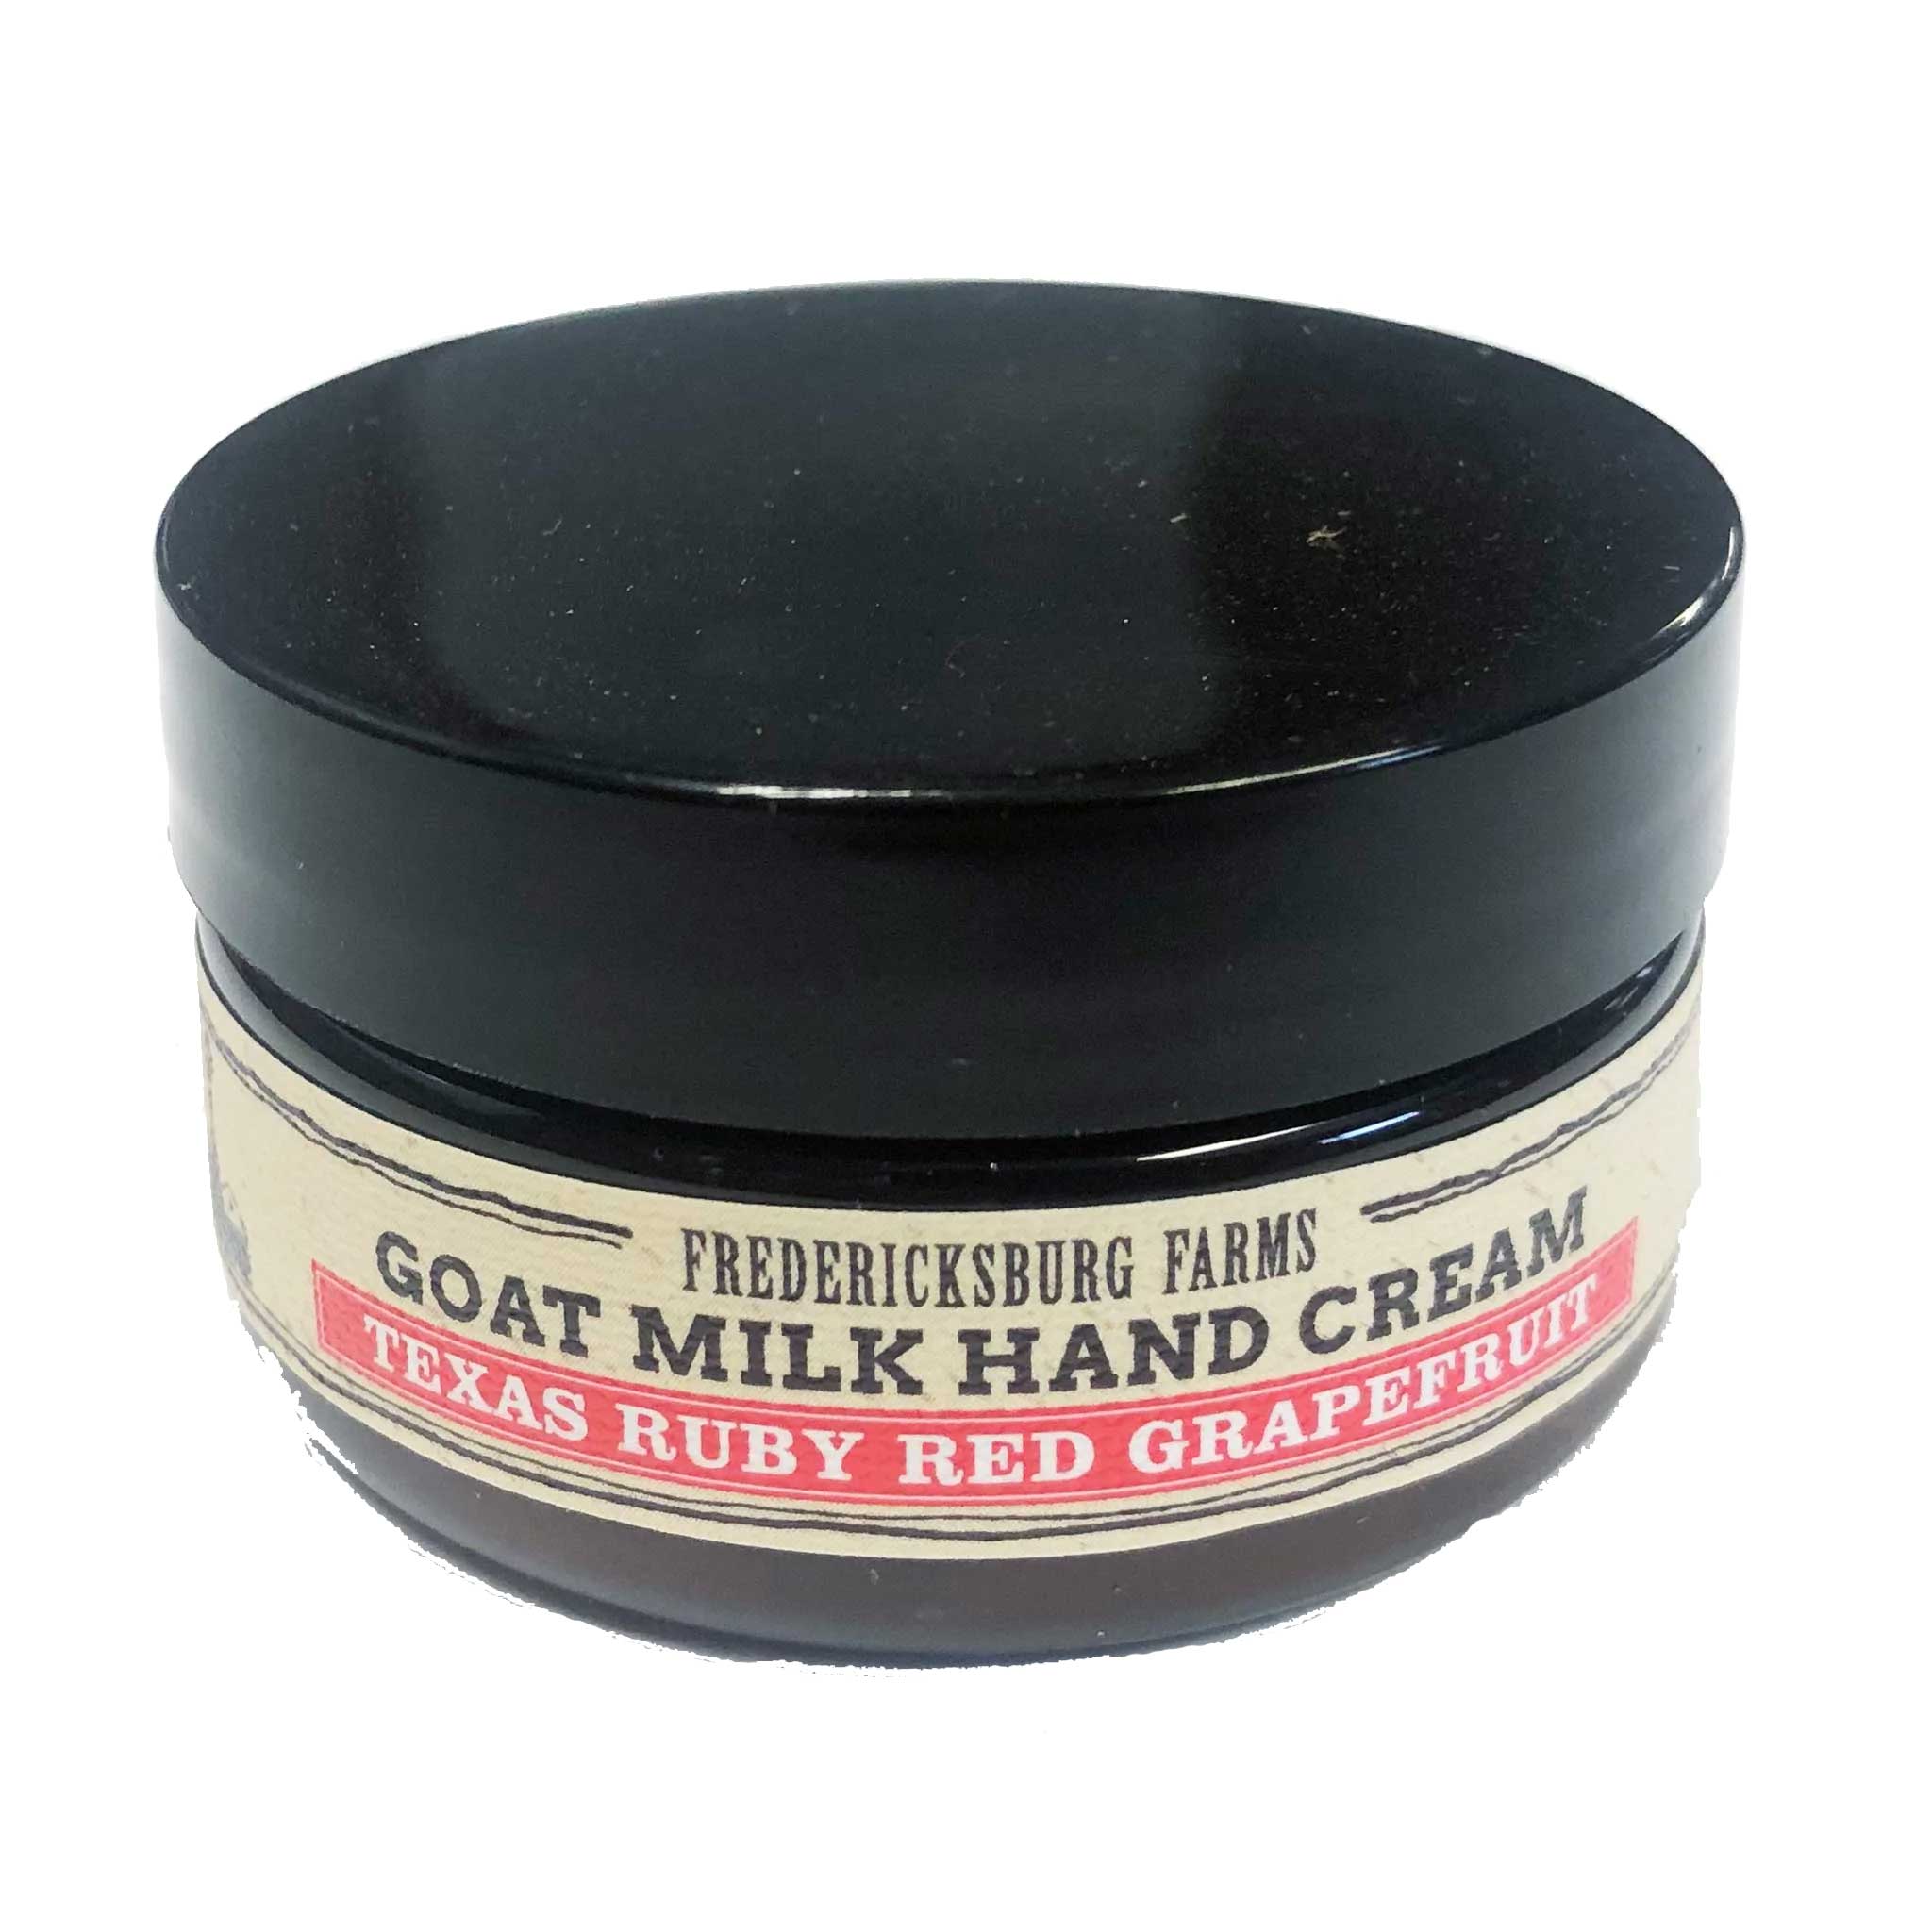 Texas Ruby Red Grapefruit Hand Cream - Fredericksburg Farms